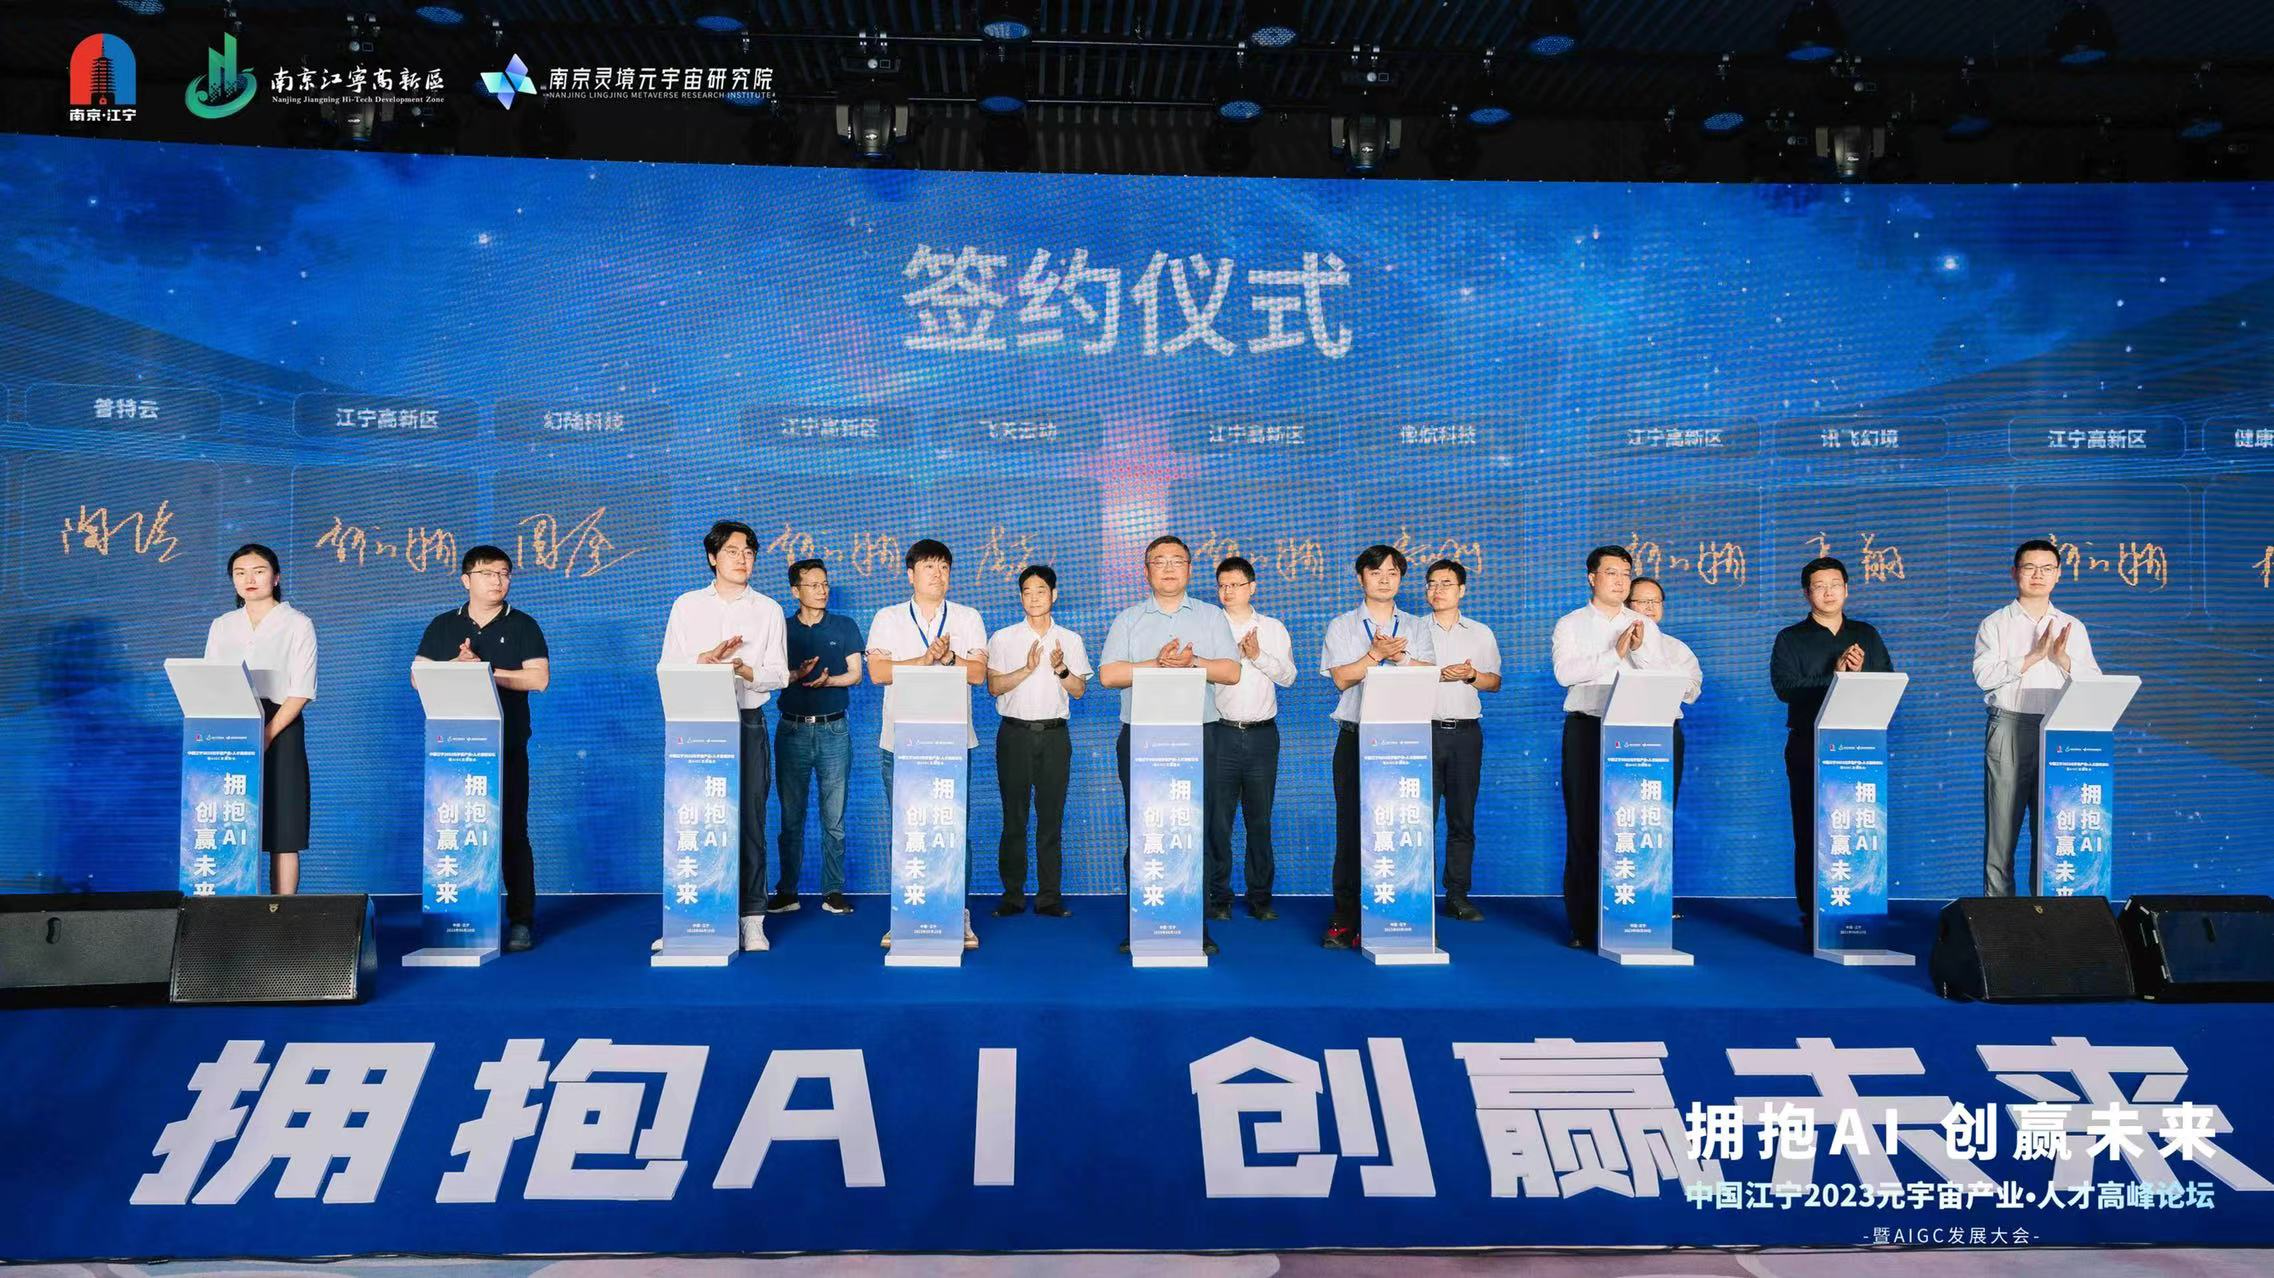 拥抱AI 创赢未来 中国江宁2023元宇宙产业·人才高峰论坛暨AIGC发展大会成功举办